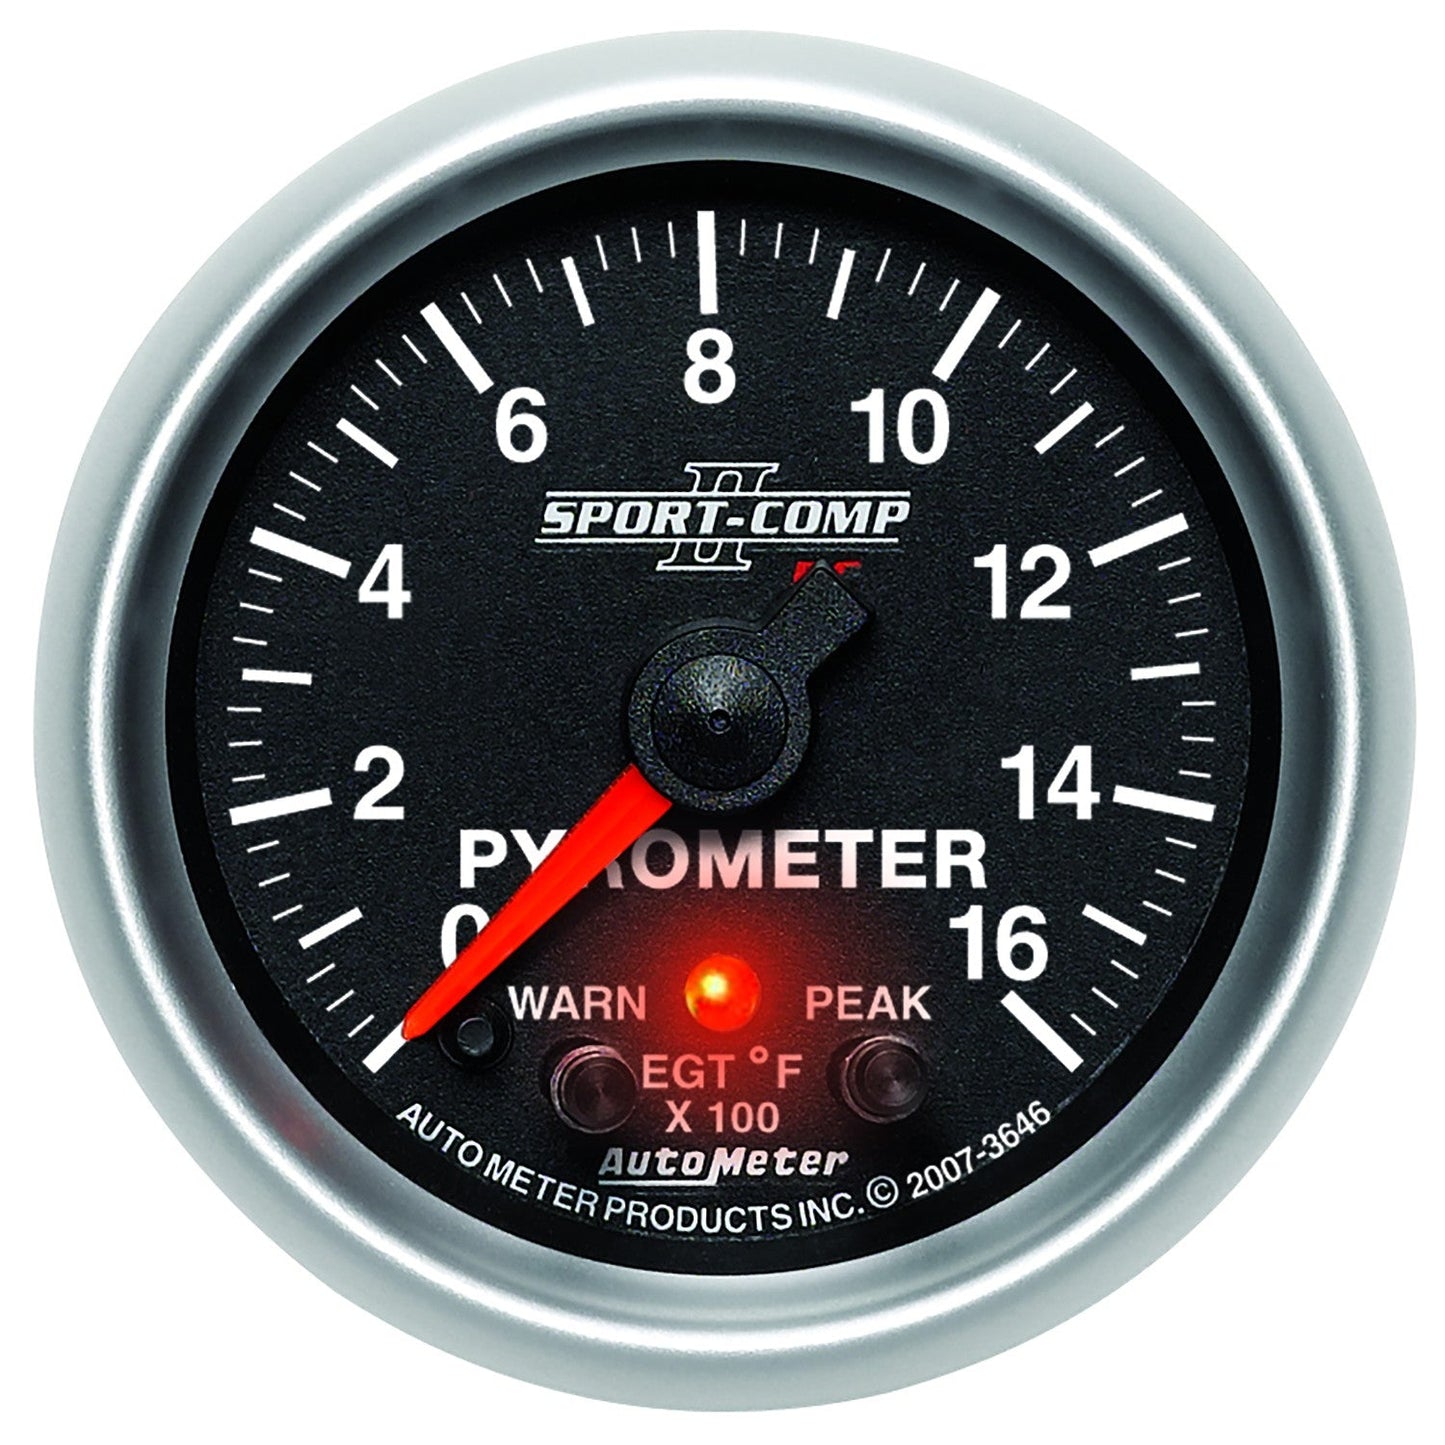 AutoMeter - PIRÔMETRO DE 2-1/16", COM PEAK &amp; WARN, 0-1600 °F, MOTOR DE PASSO, SPORT-COMP II (3646)